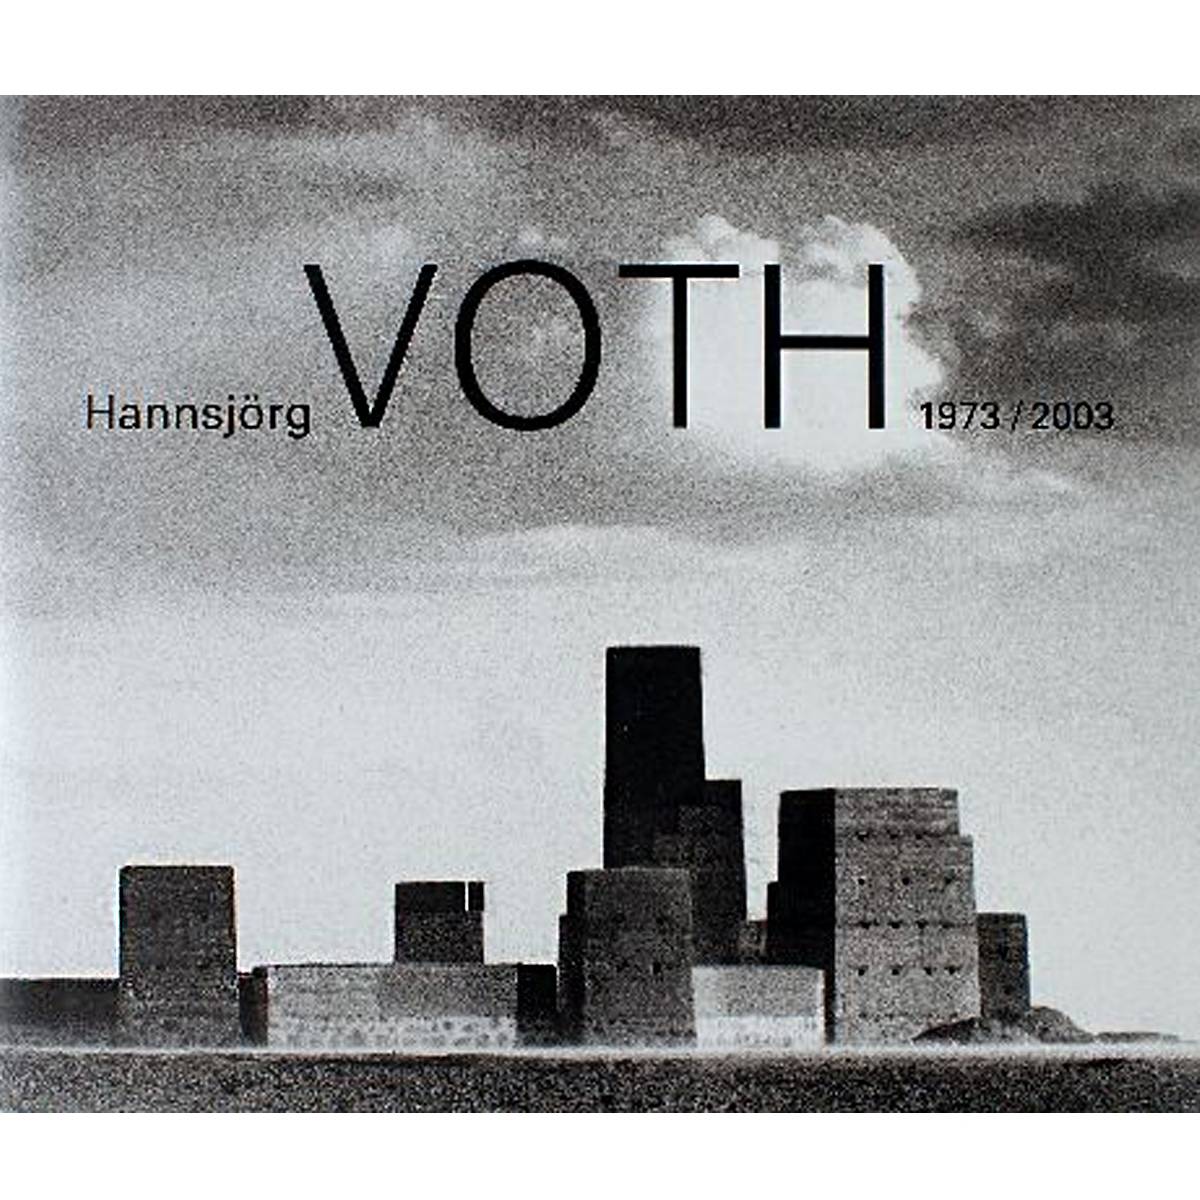 Hannsjörg Voth 1973 / 2003